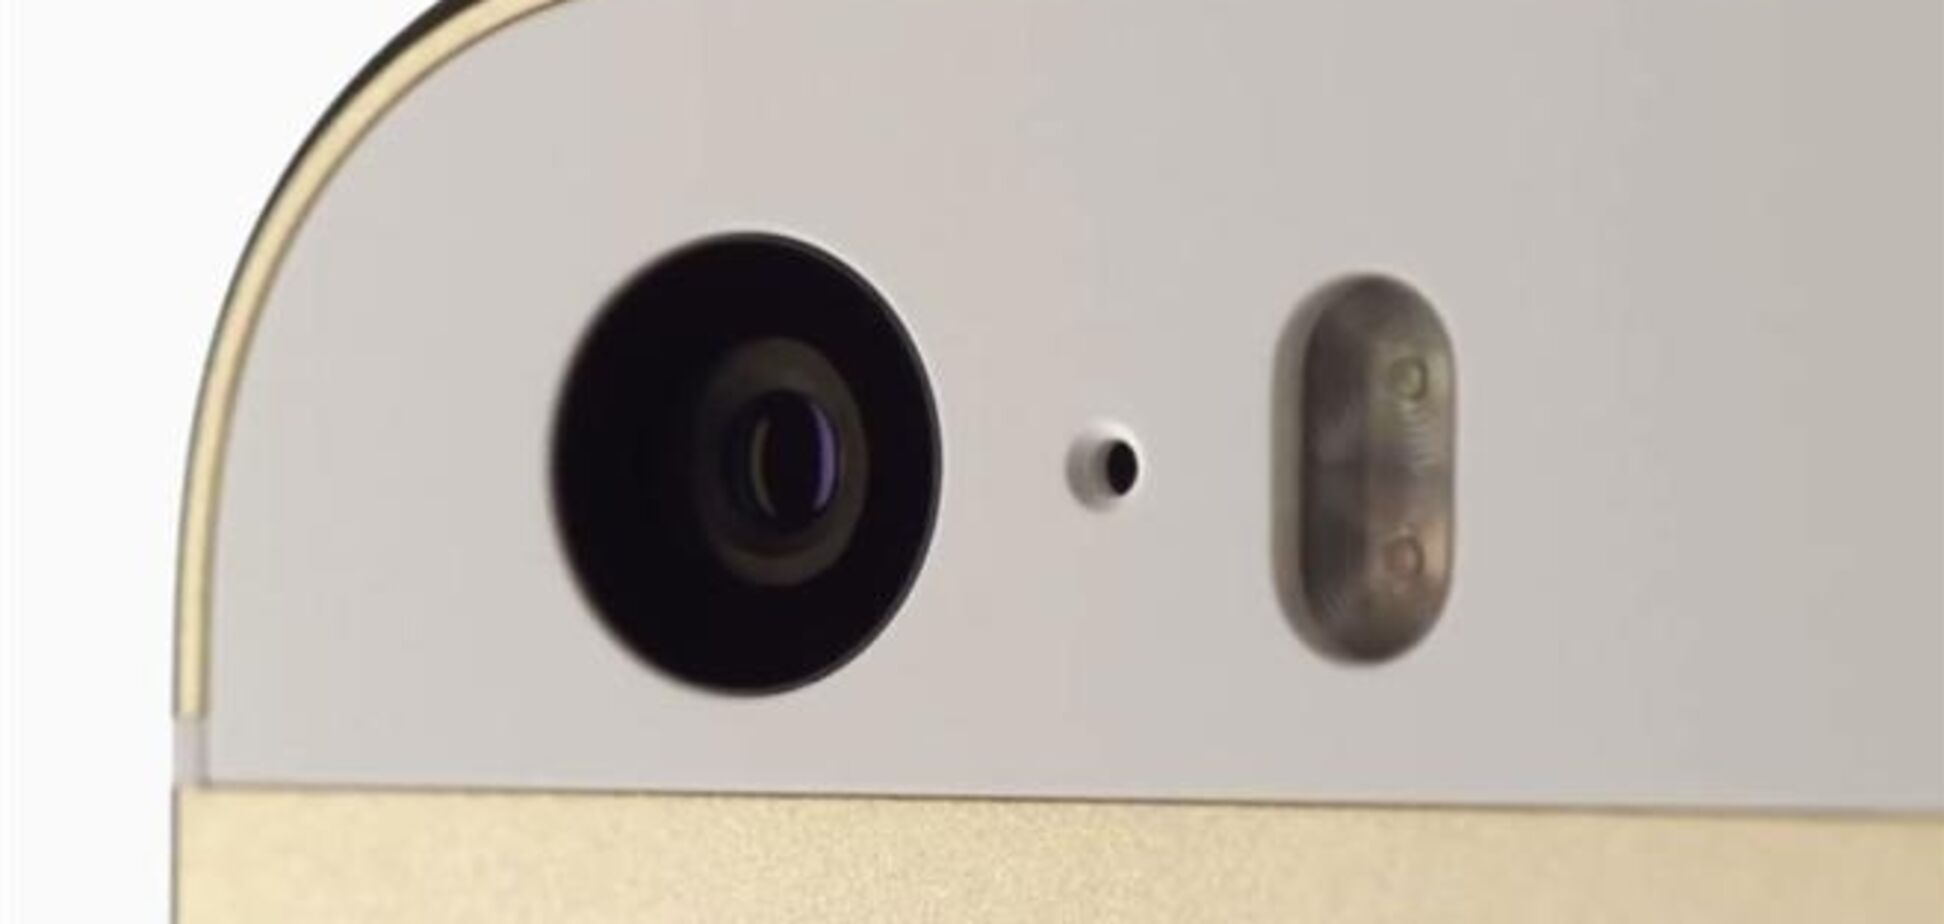 Инсайдер утверждает, что у iPhone 6 будет задняя камера на 8MP с апертурой f/2.0